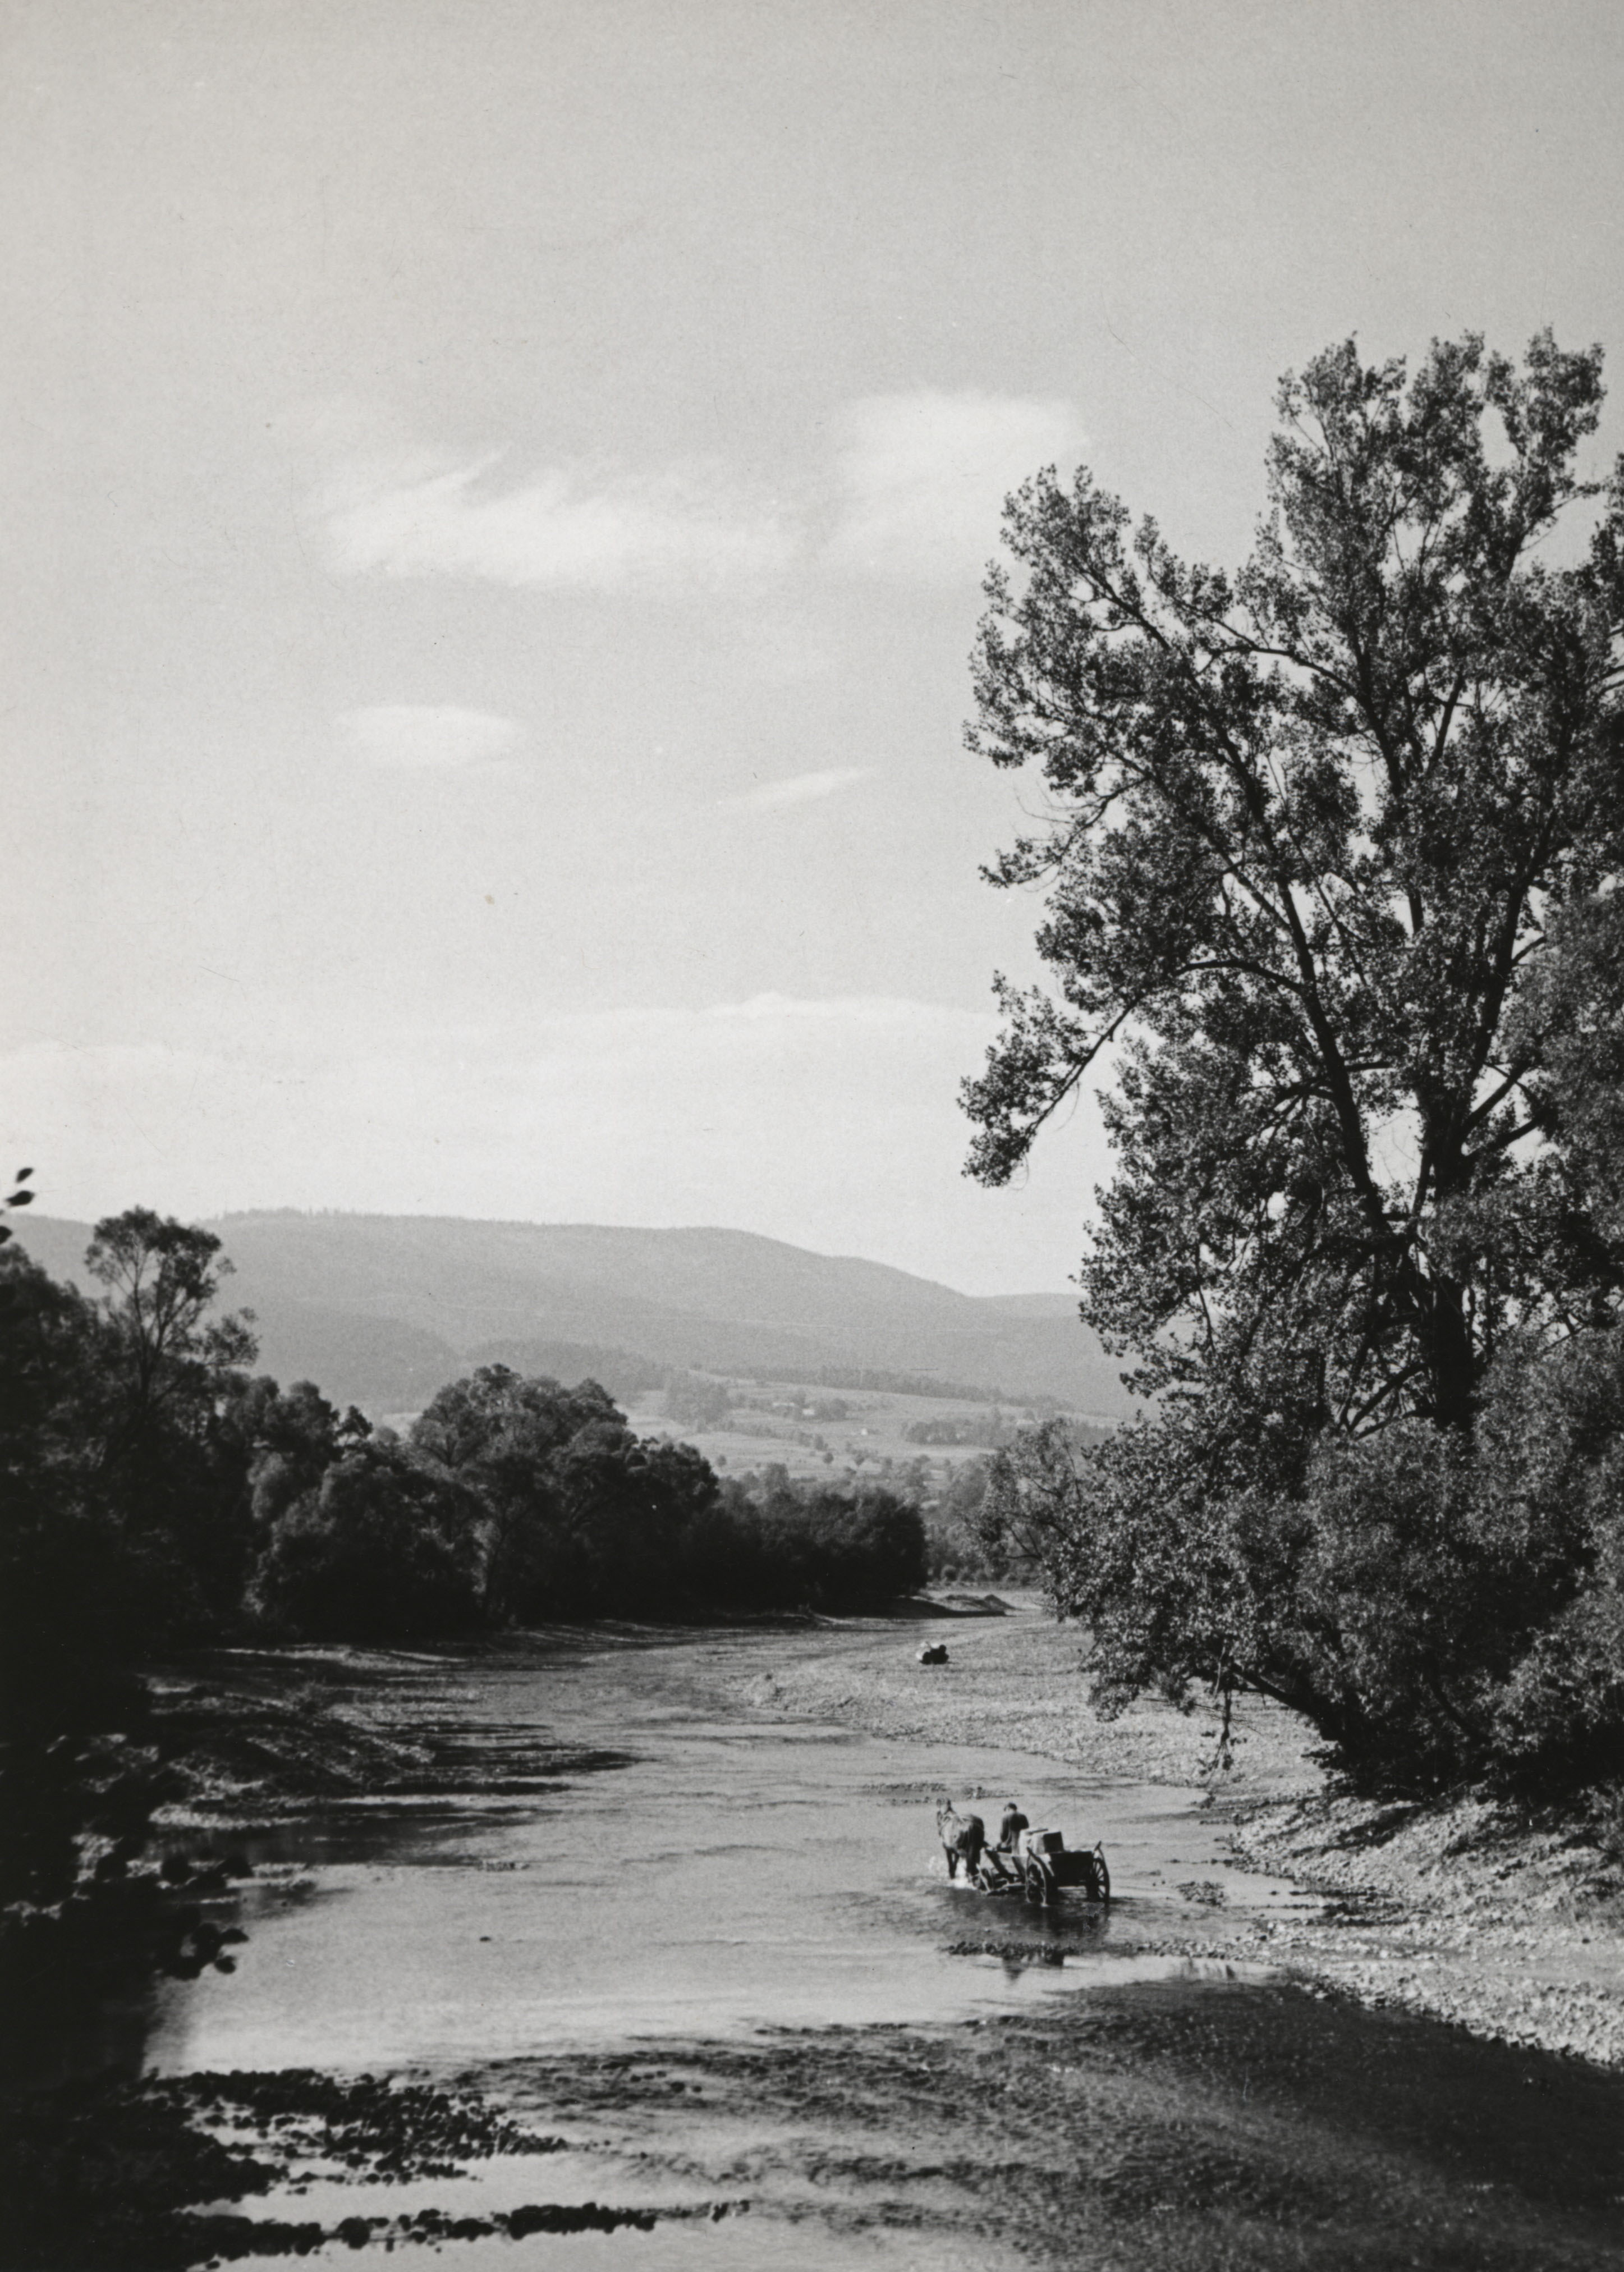 Dolina rzeki Łososiny z widokiem na górę Łopień, lata 60., fot. Henryk Hermanowicz